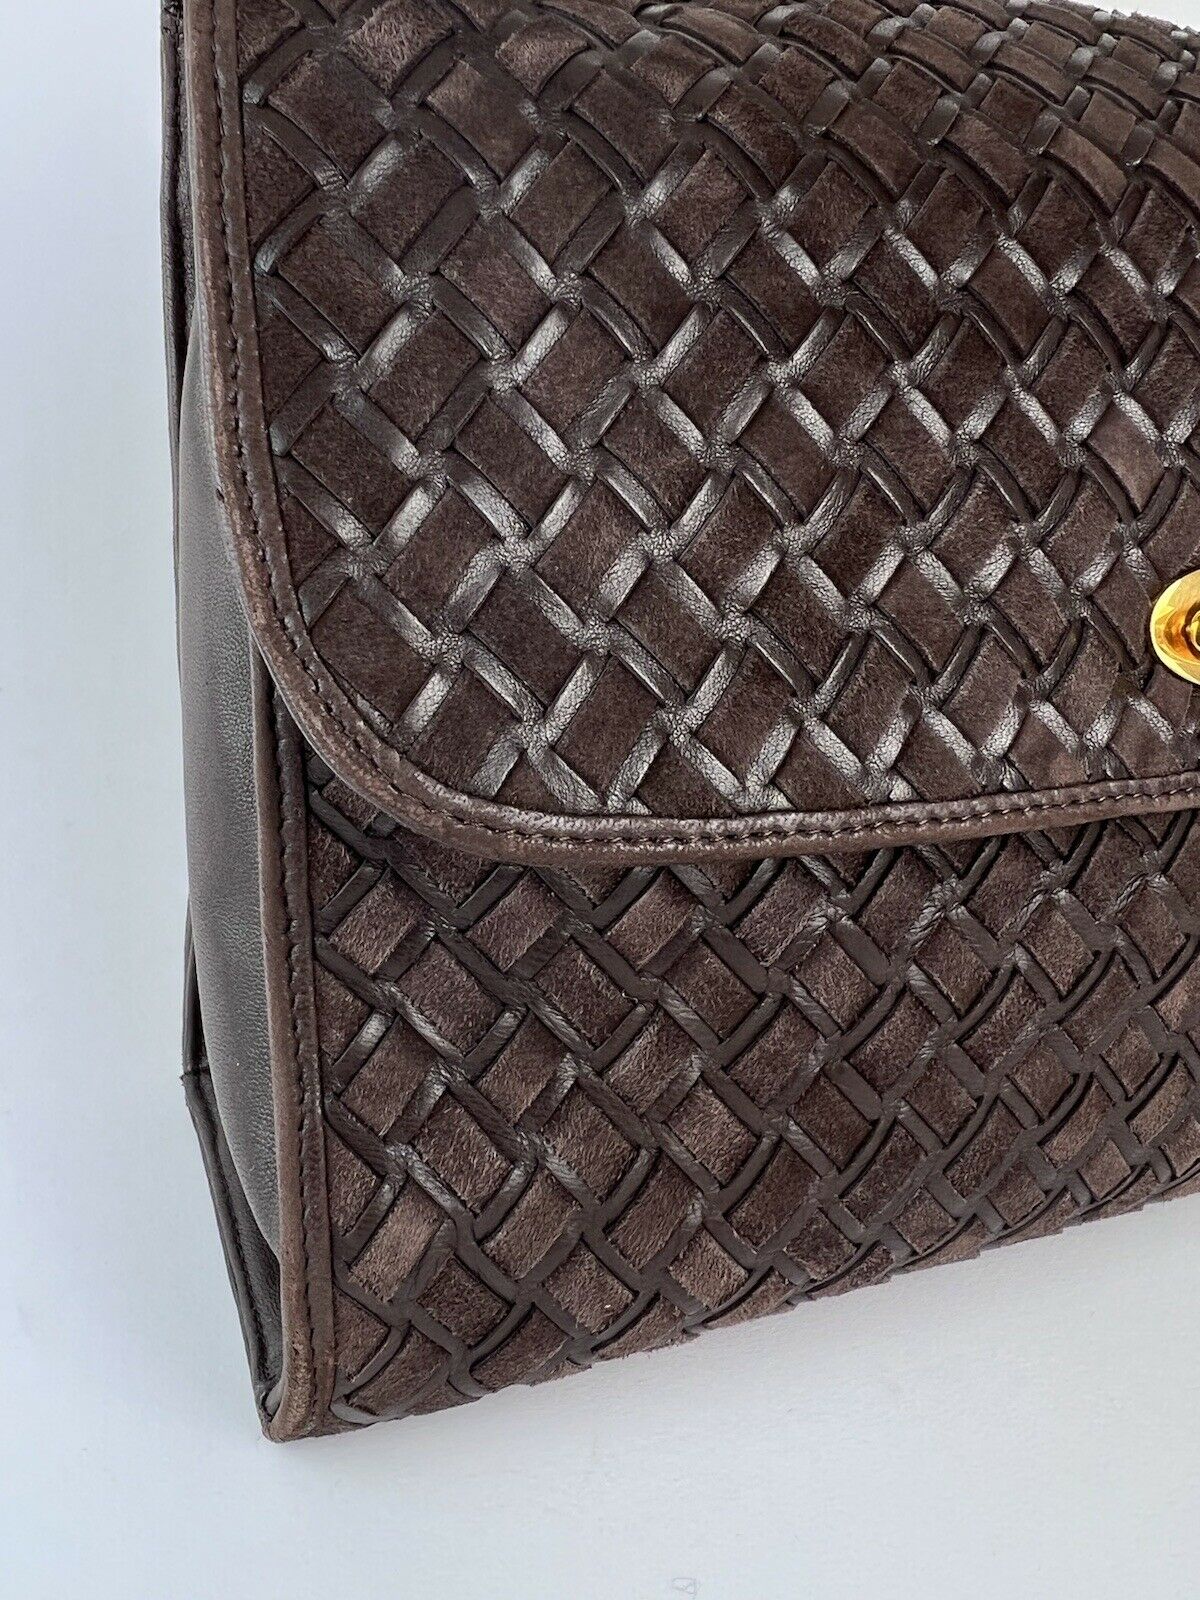 【SOLD OUT】BALLY Shoulder Bag Crossbody Bag Handbag Swede Leather Brown Vintage